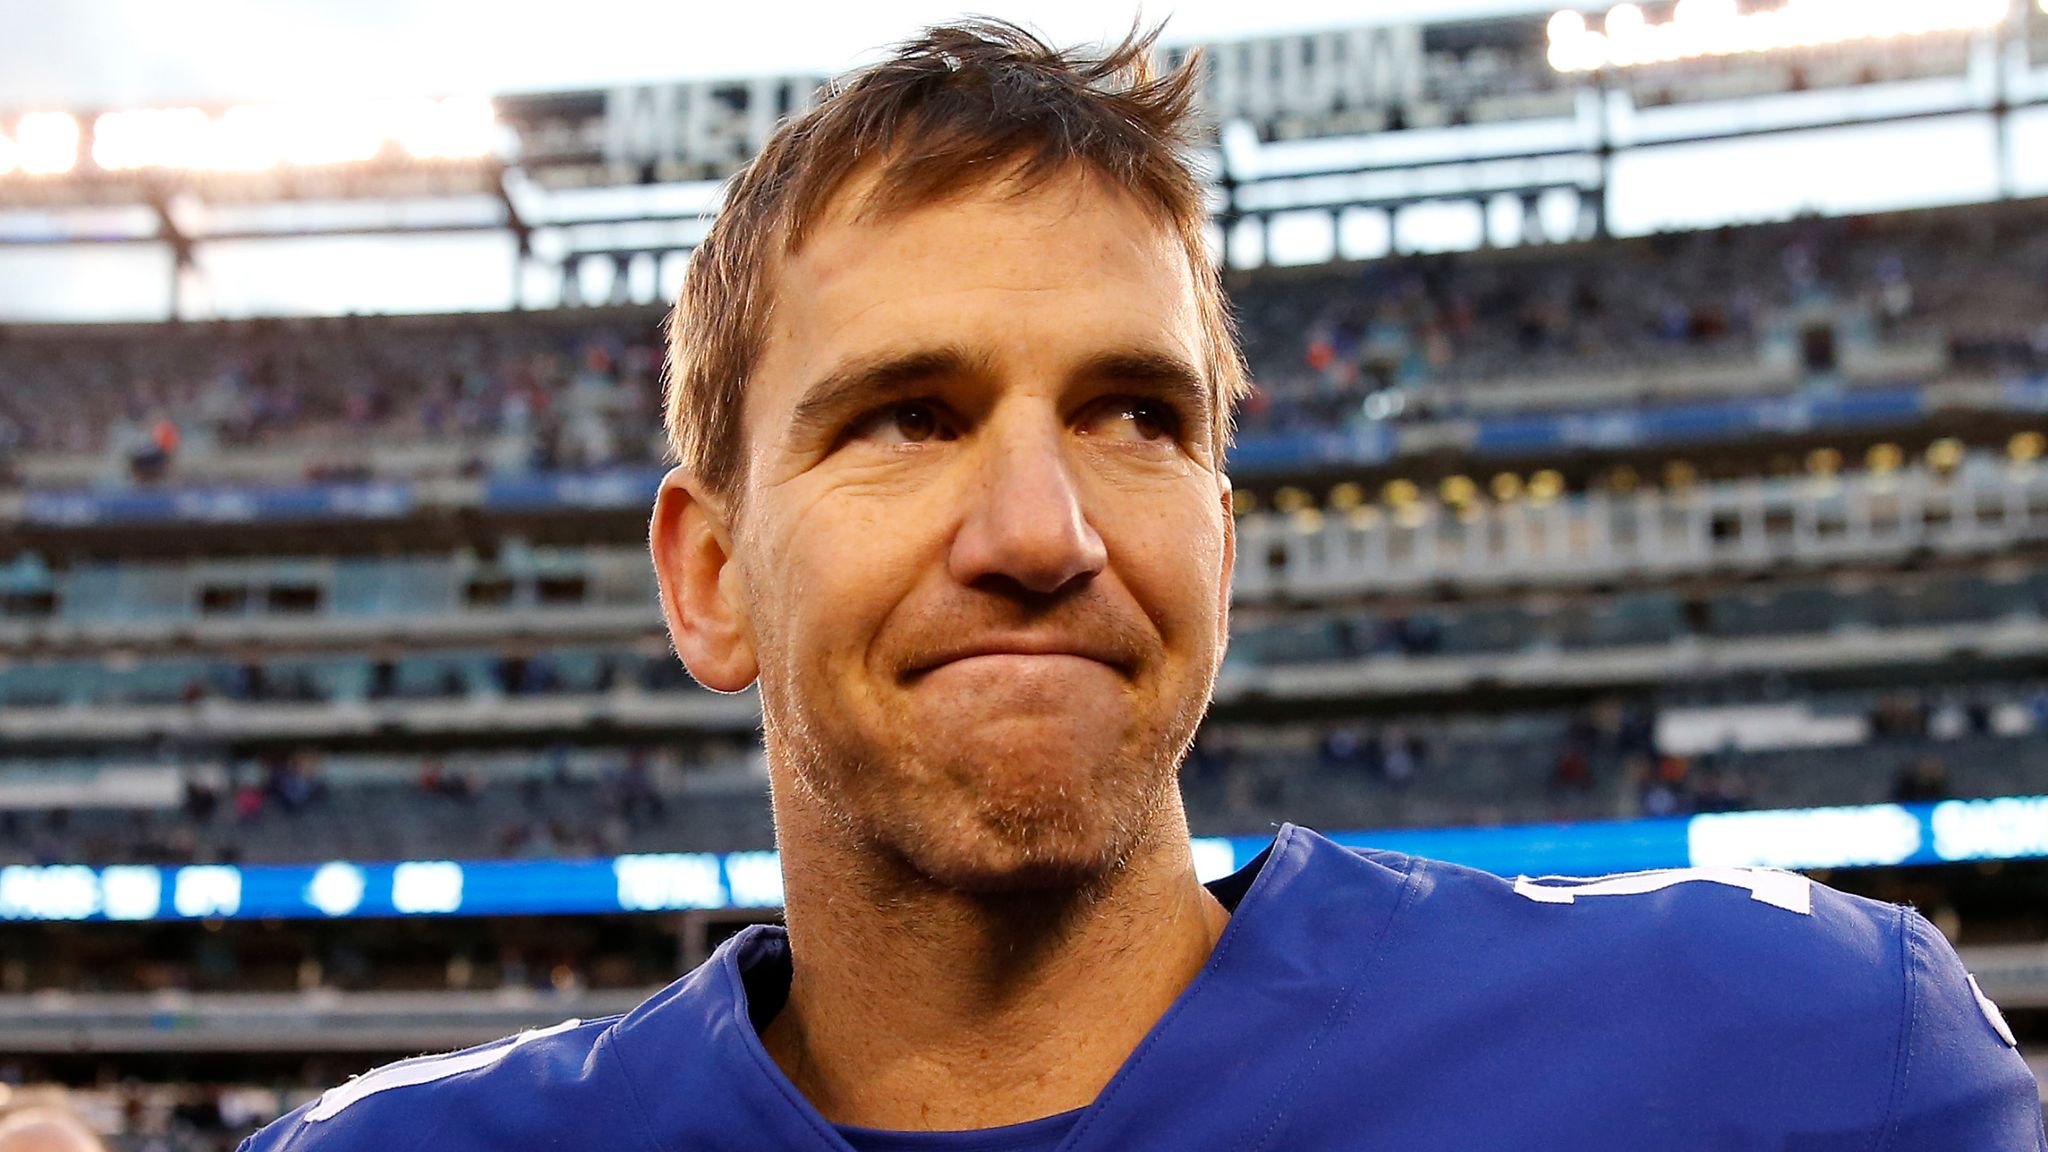 New York Giants QB Eli Manning retiring from NFL